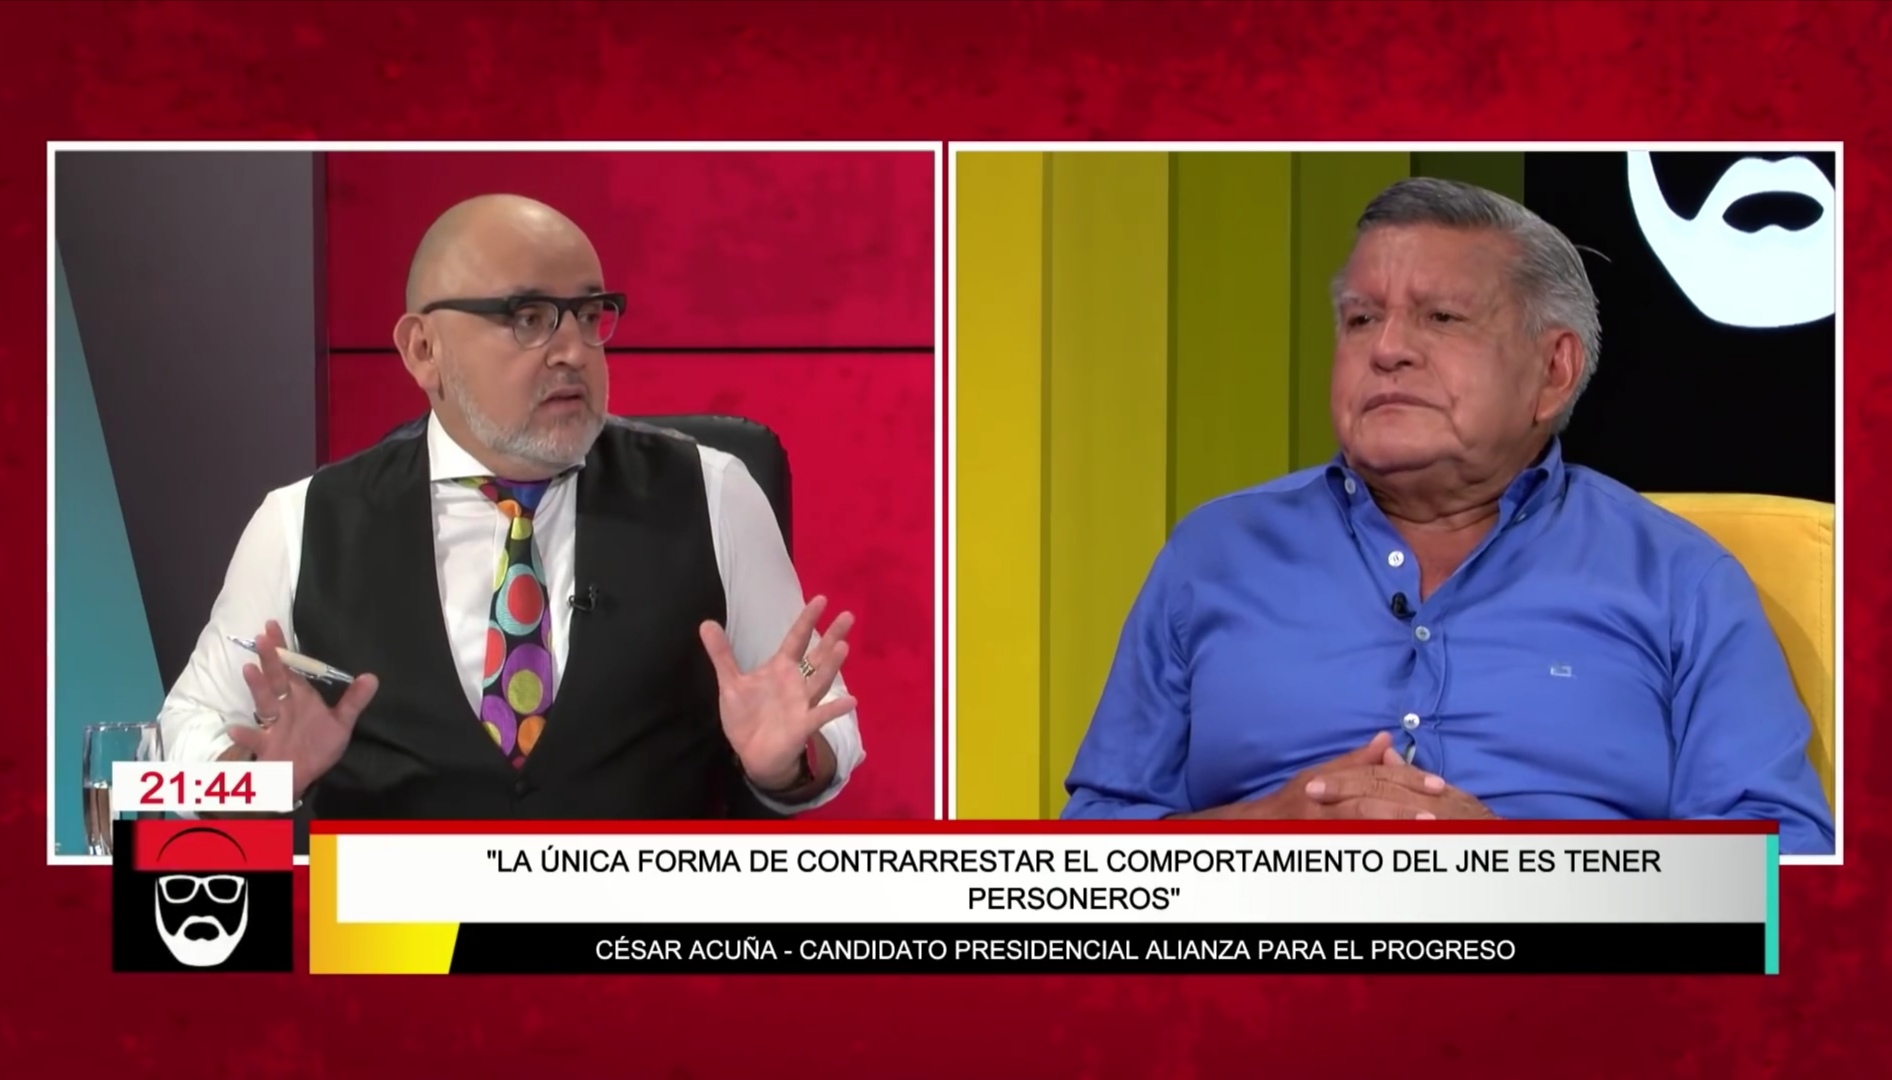 César Acuña: “Vamos a poner personeros en todas las mesas de elecciones”